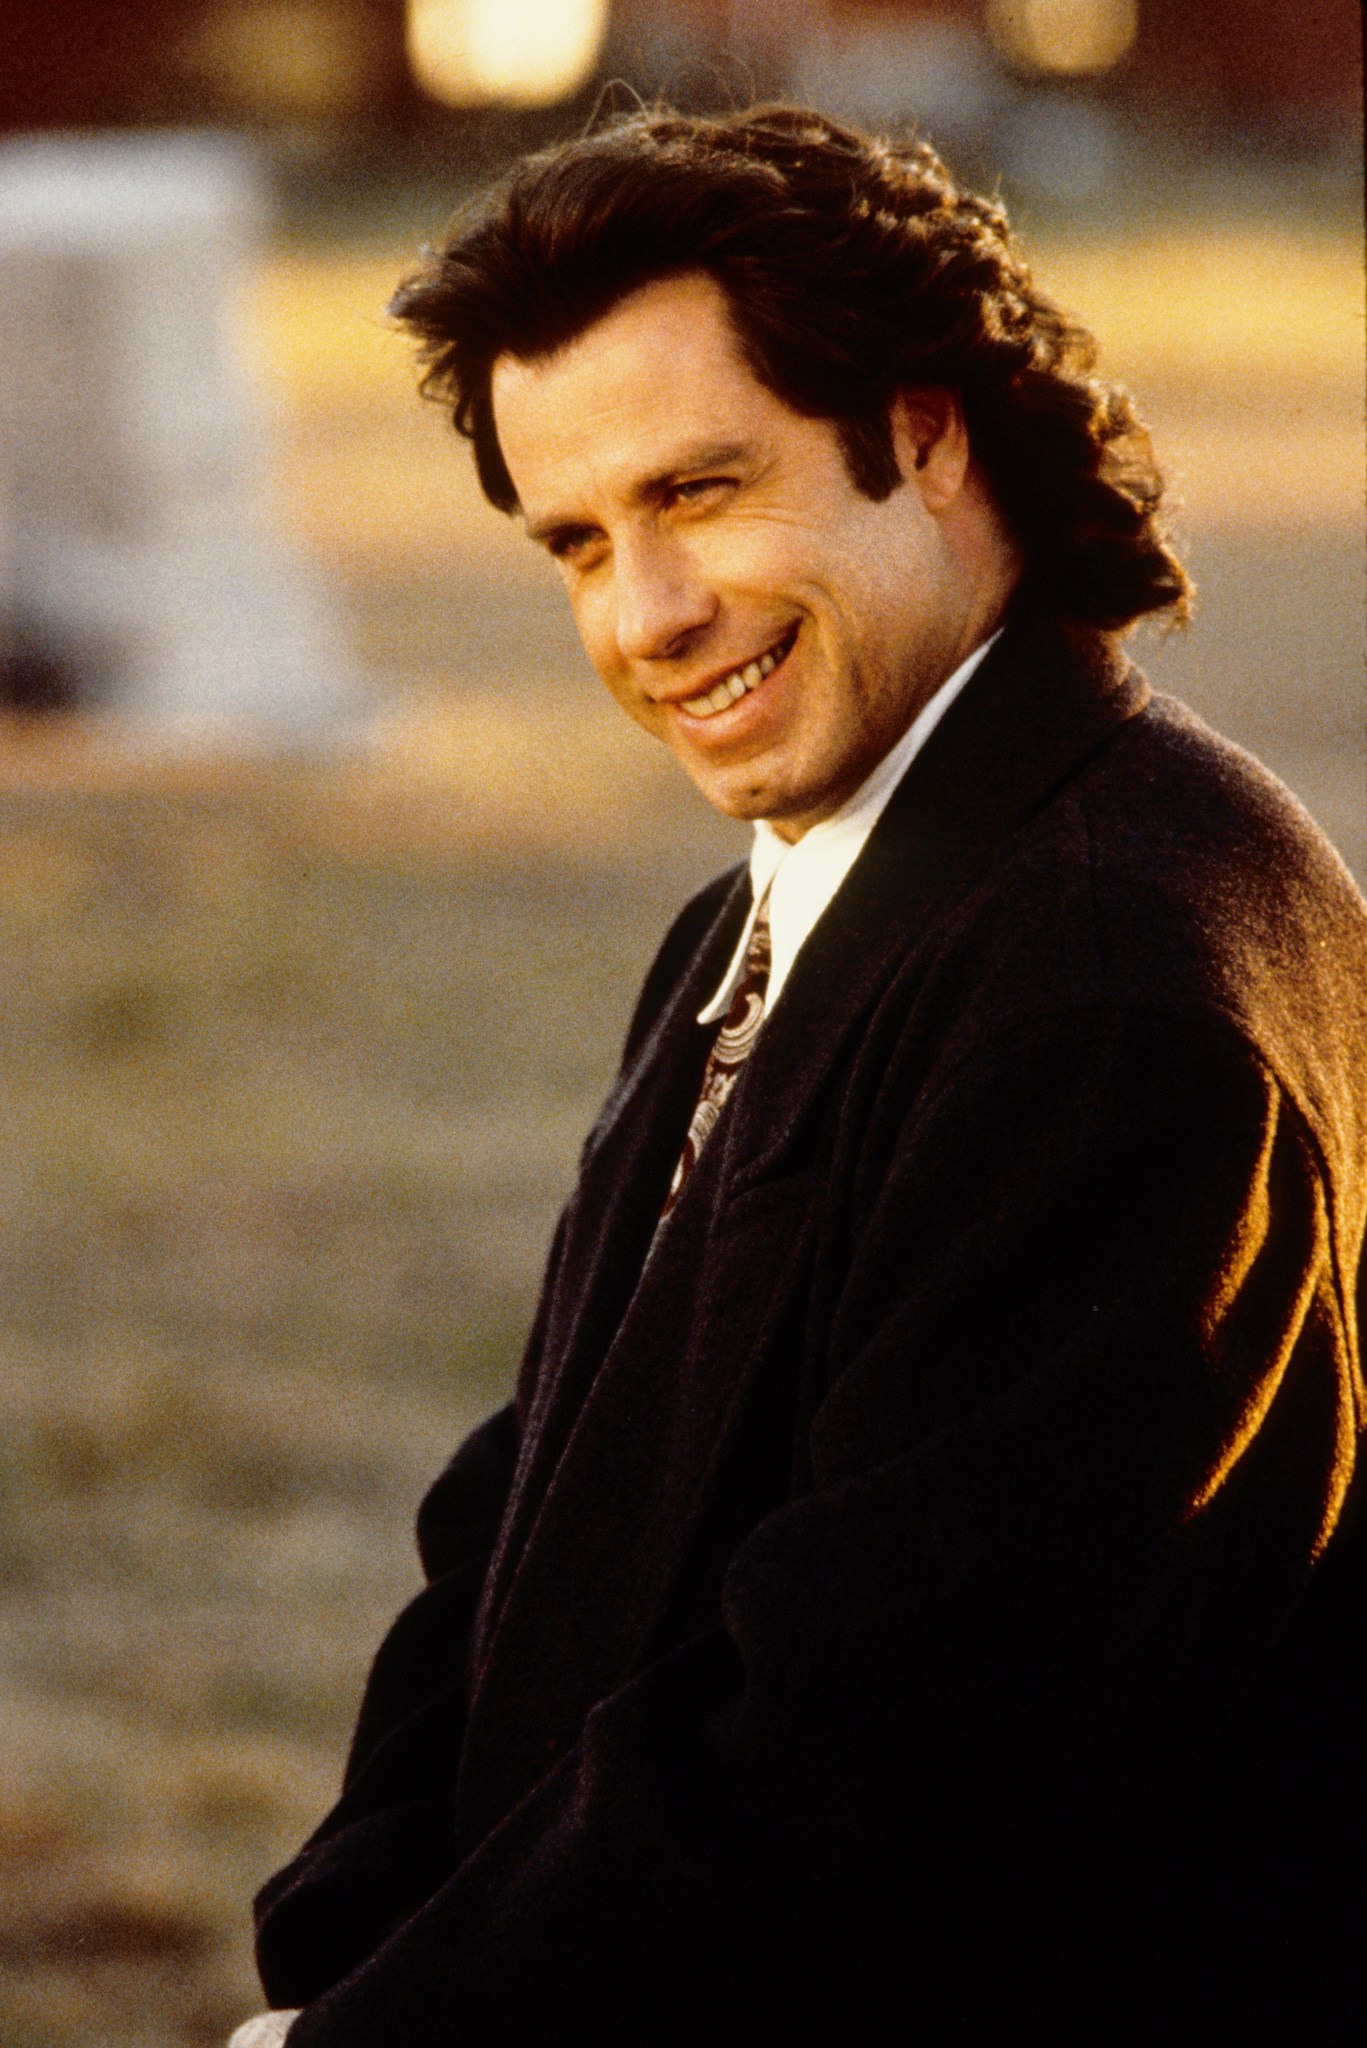 Still of John Travolta in Michael (1996)